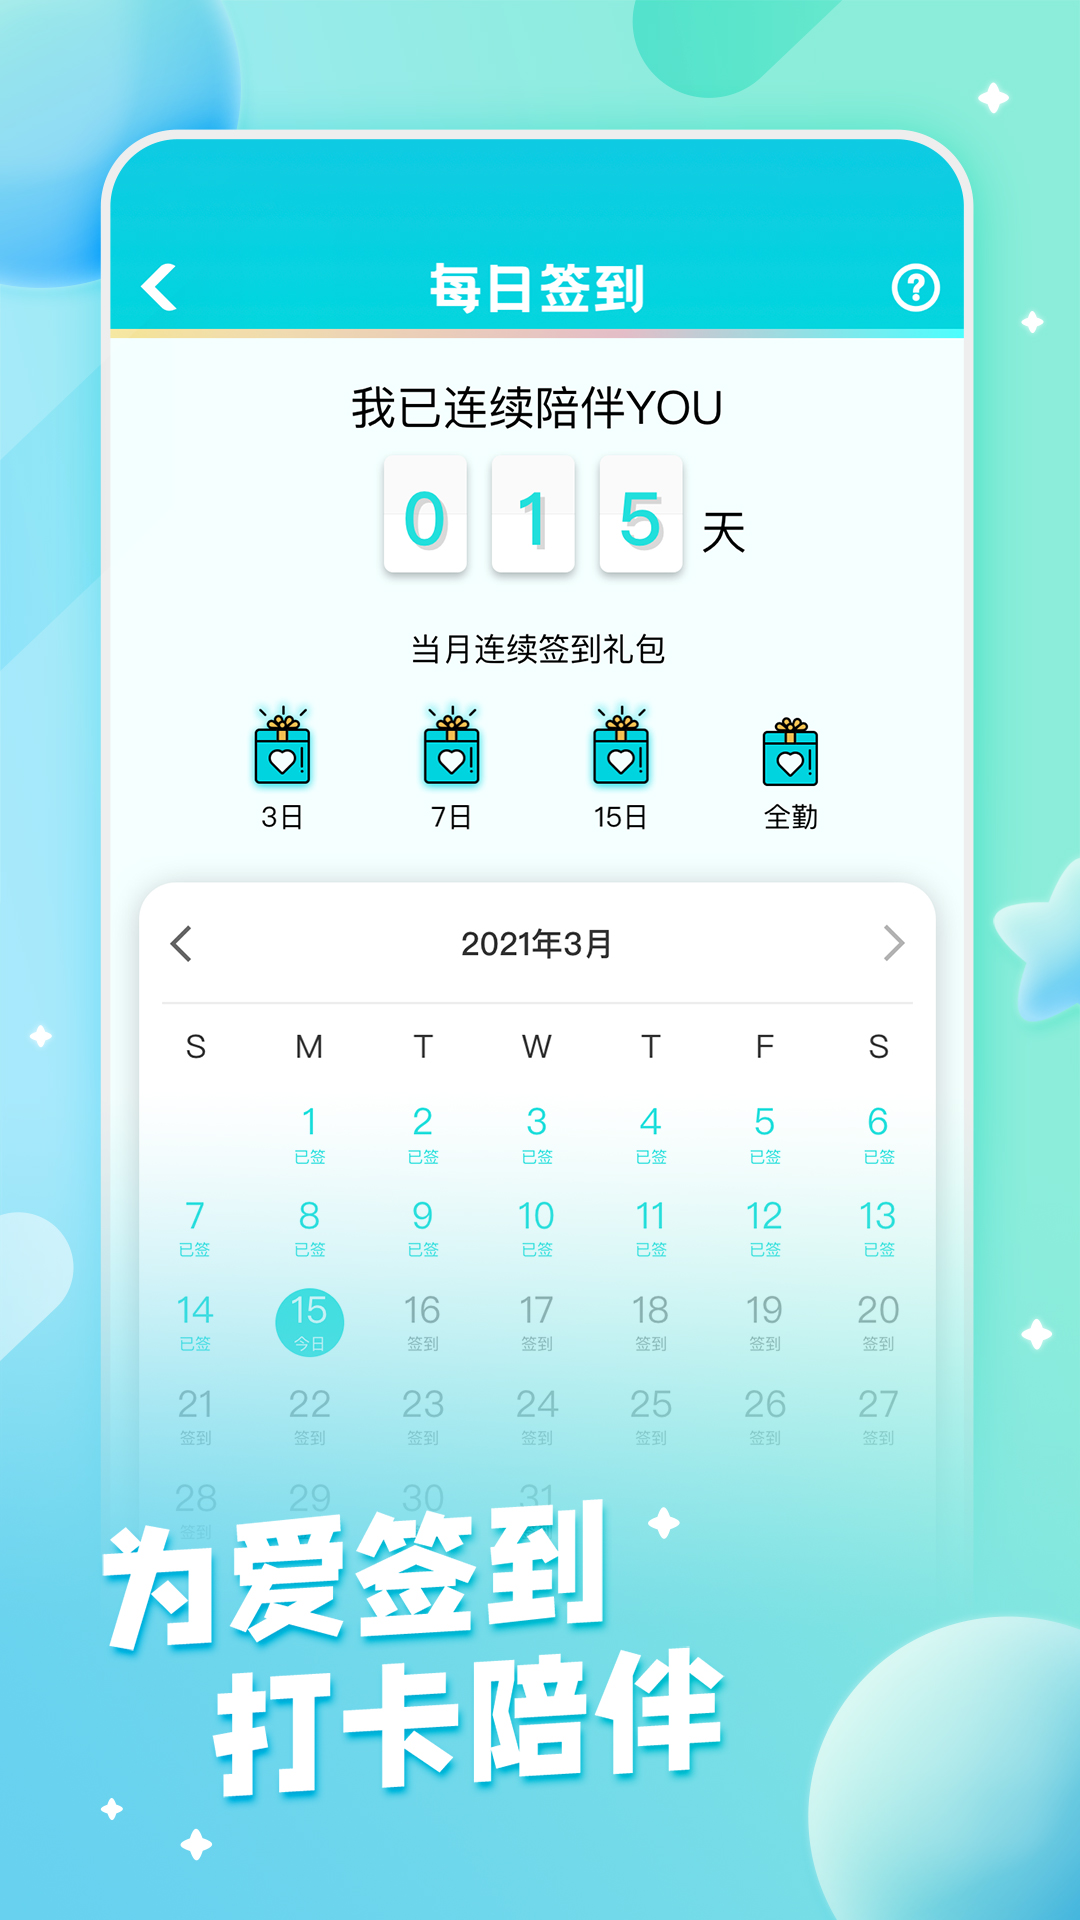 fanclub官方app